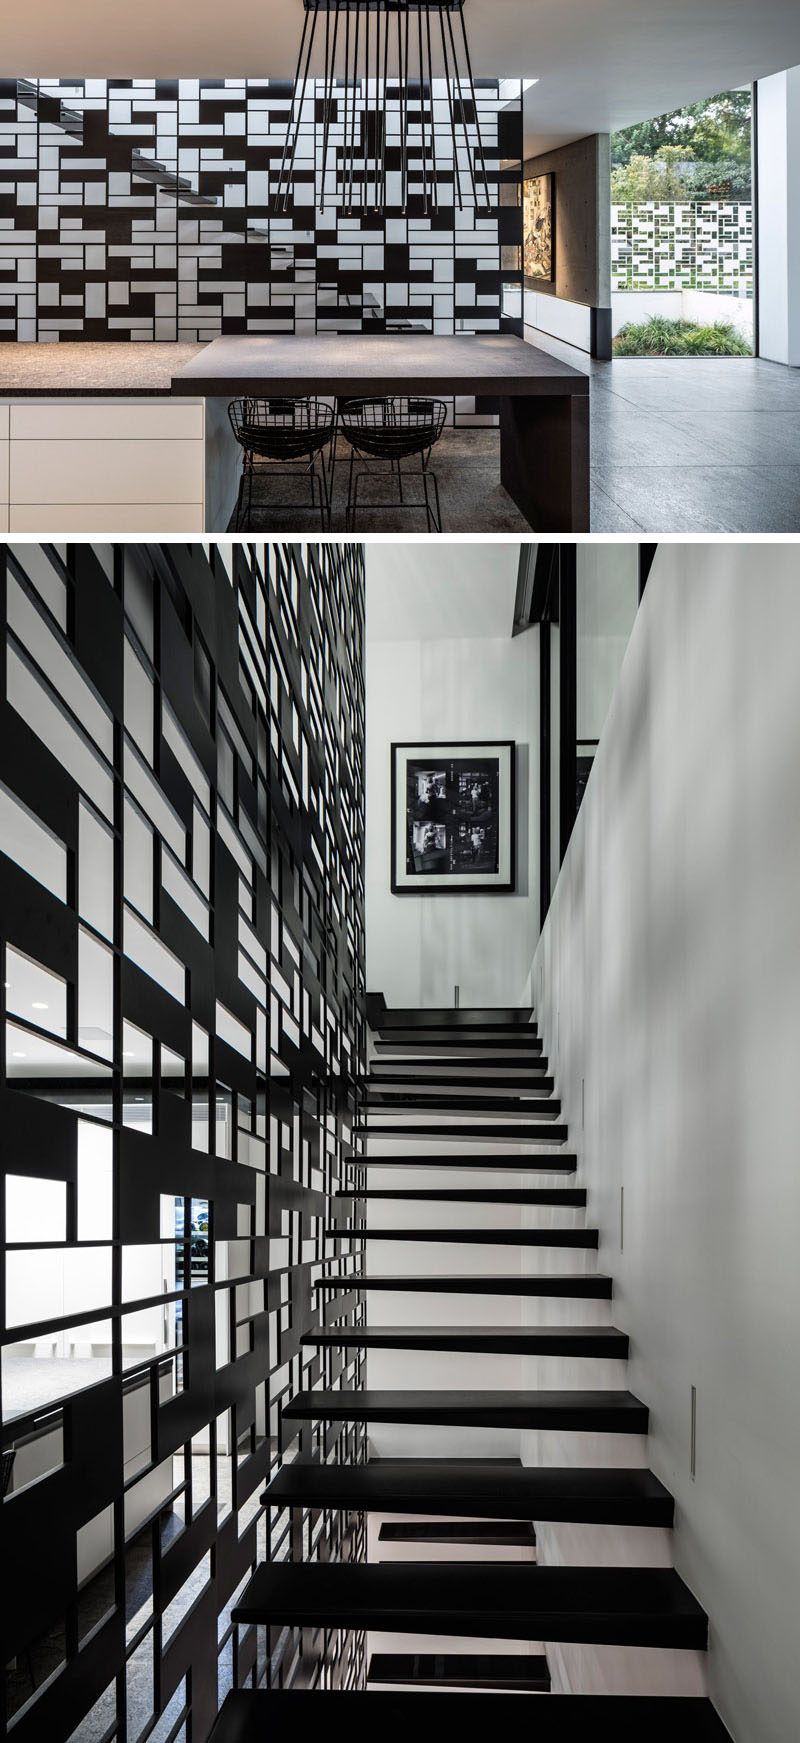 Защитные перила из черного металла, защищающие одну сторону лестницы, соответствуют дизайну белого забора, окружающего дом, создавая непрерывность во всем доме и повышая безопасность лестницы.